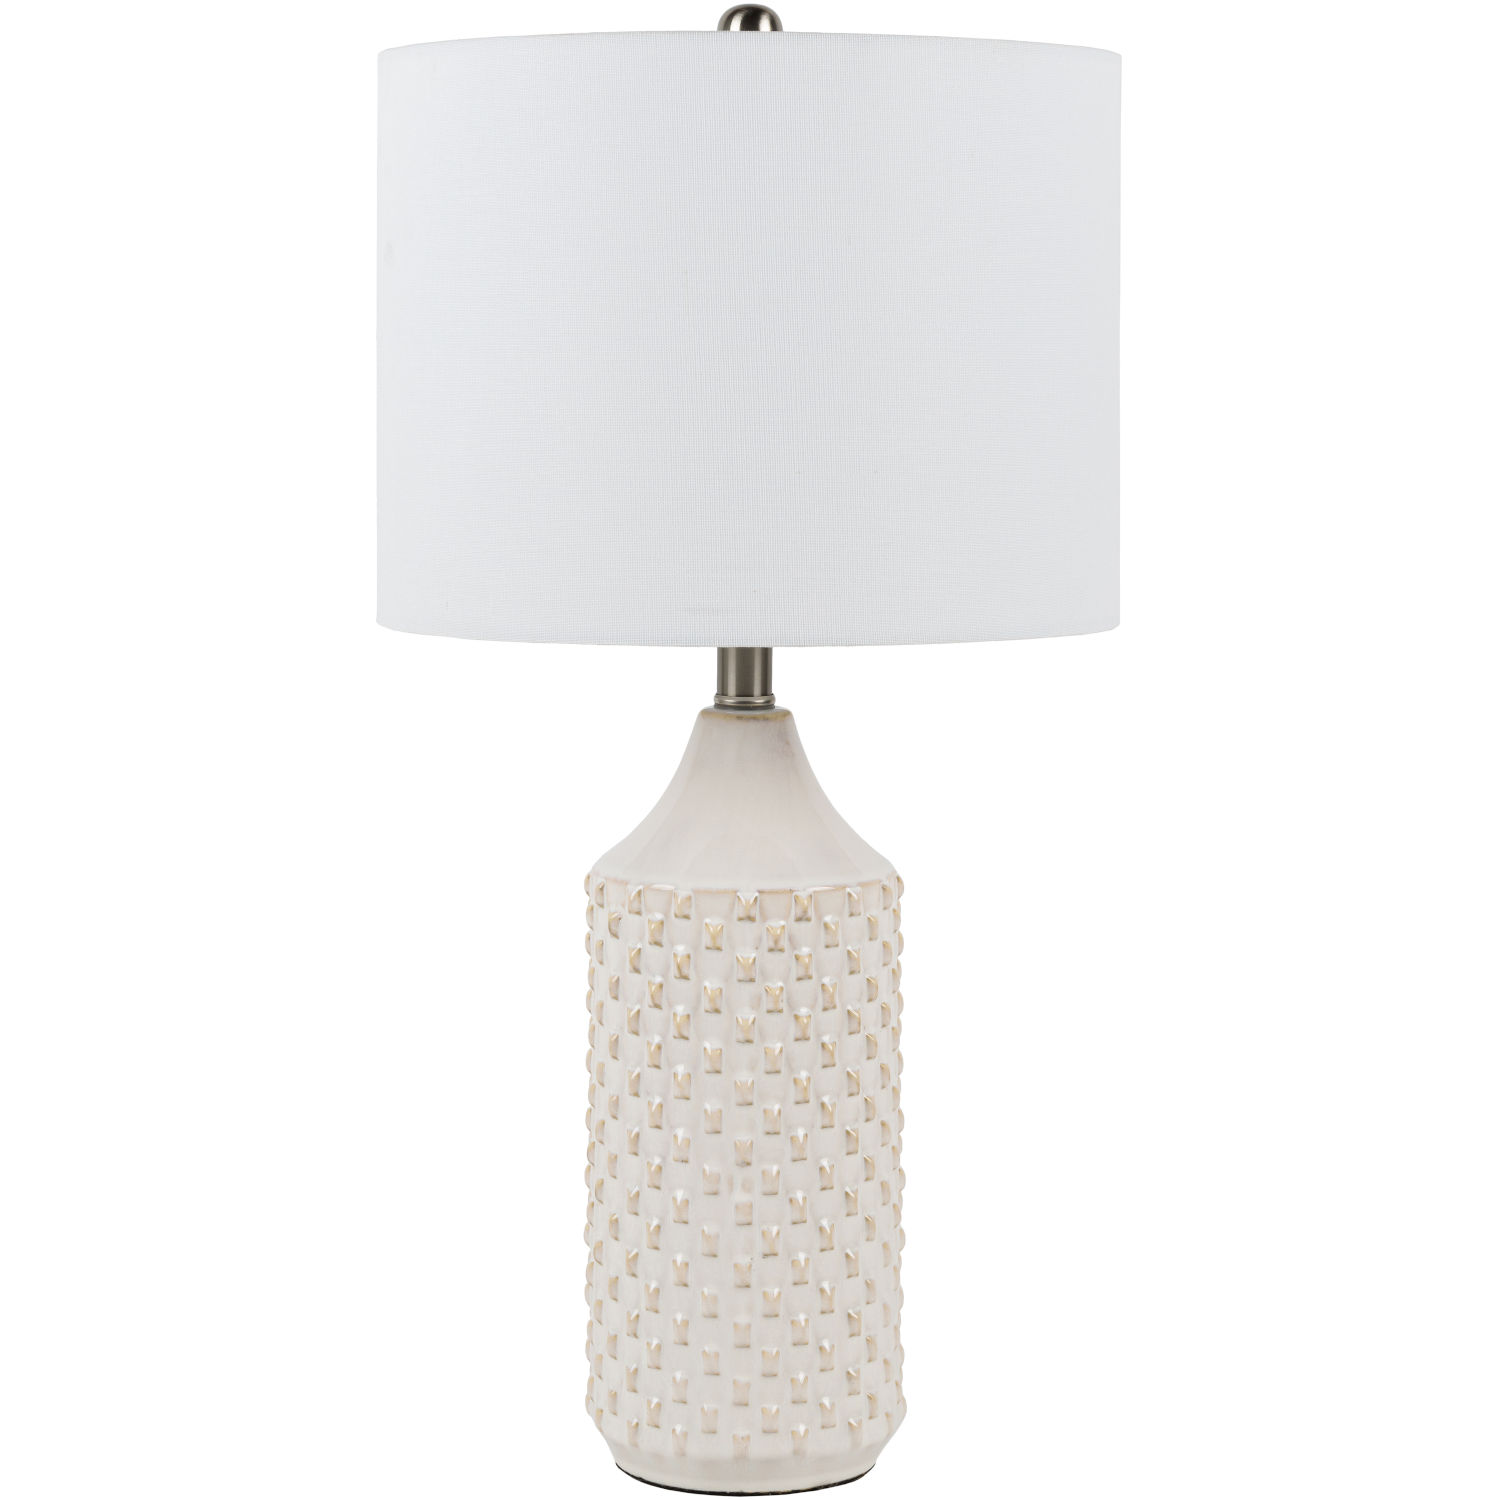 Jessore White Table Lamp